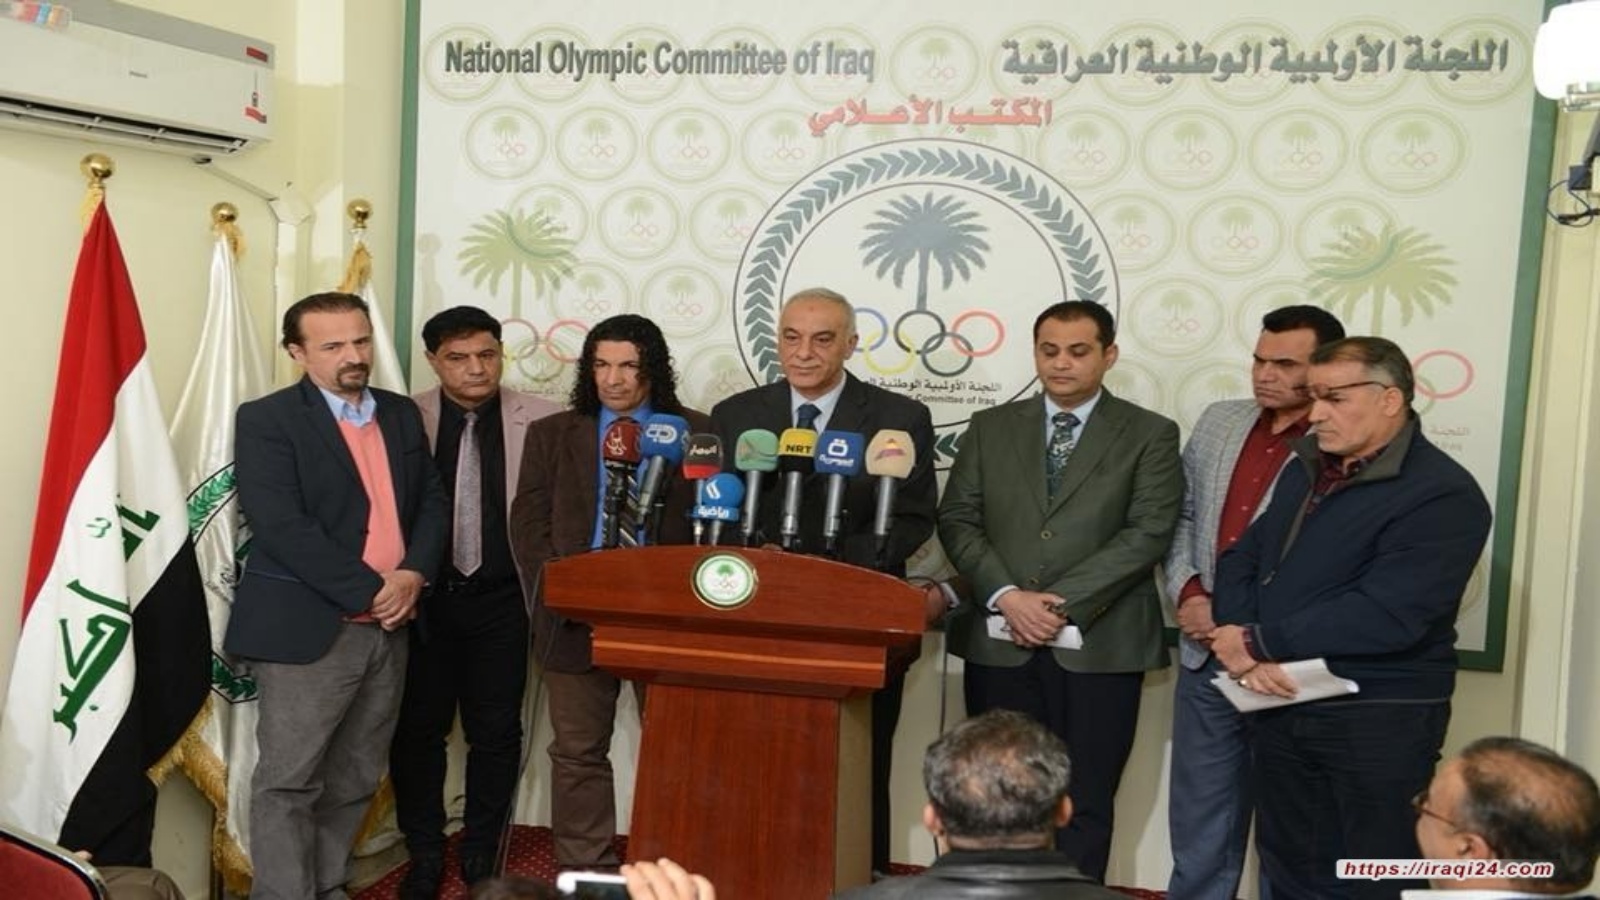 الاولمبية الدولية تؤكد عدم اعترافها بنتائج انتخابات الاولمبية العراقية